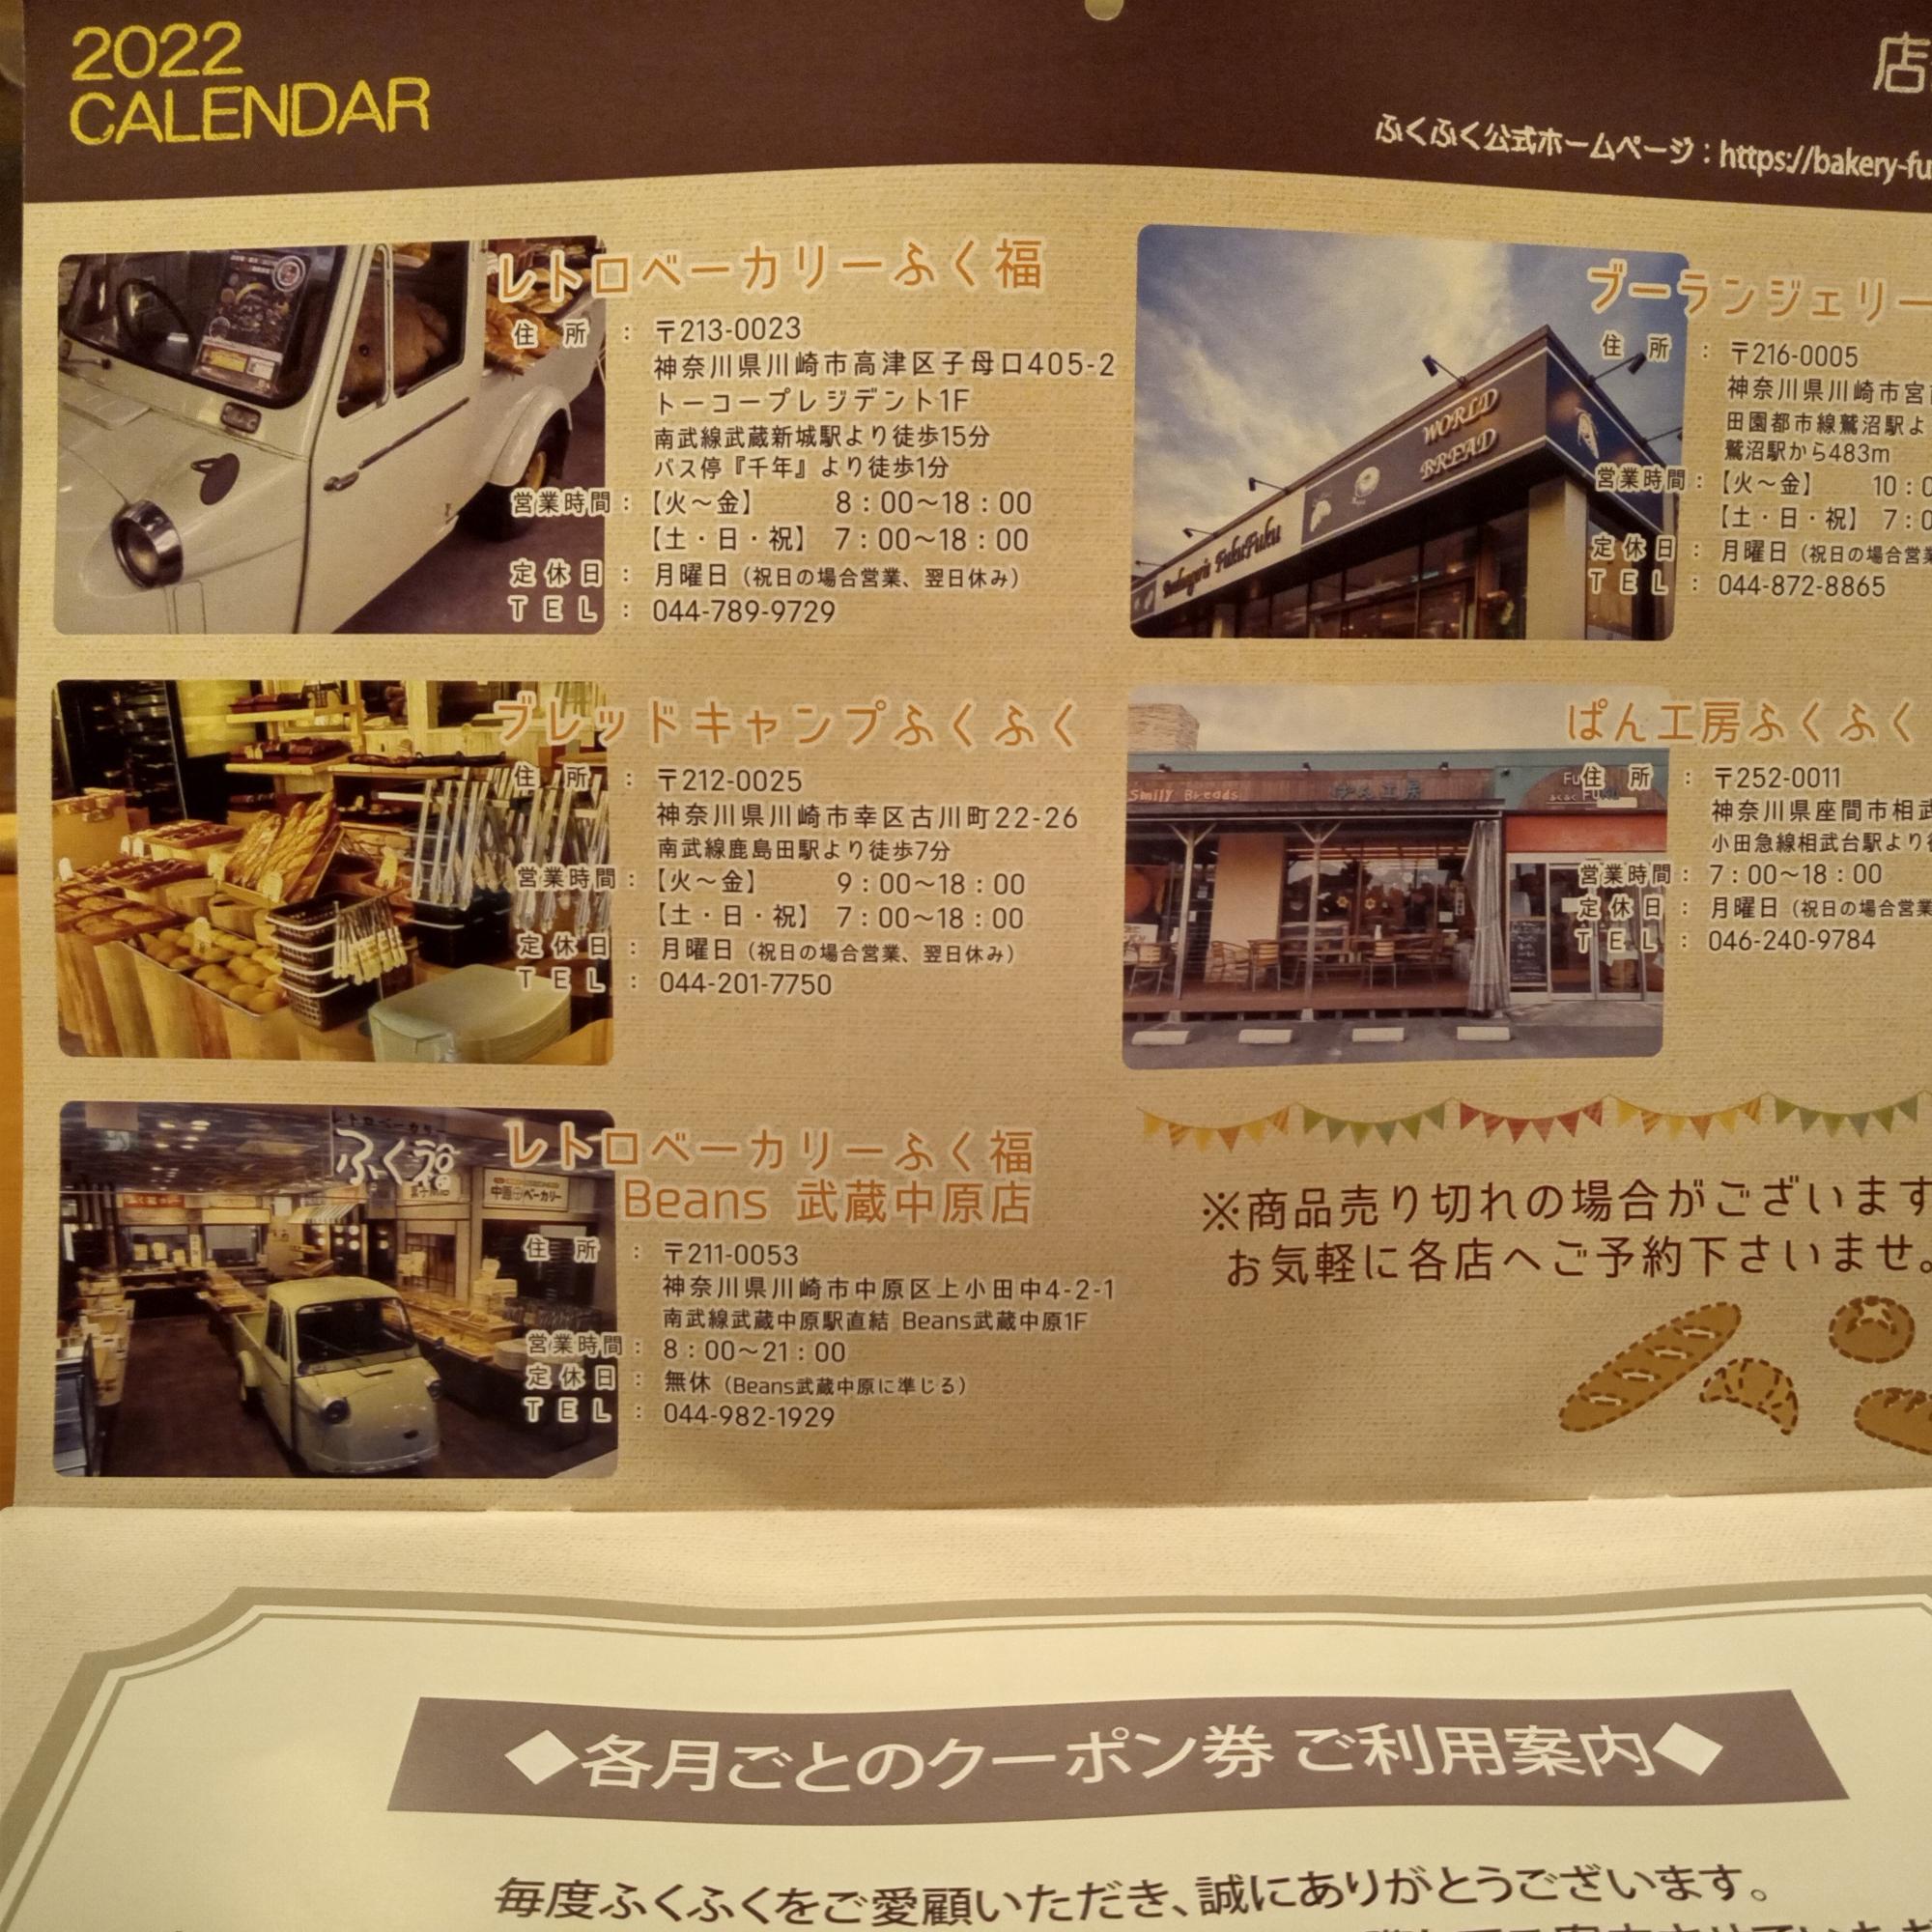 ブーランジェリーもあるとは！武蔵中原店にも高級食パンがあったので、バターを使った高級ラインでしょうか。